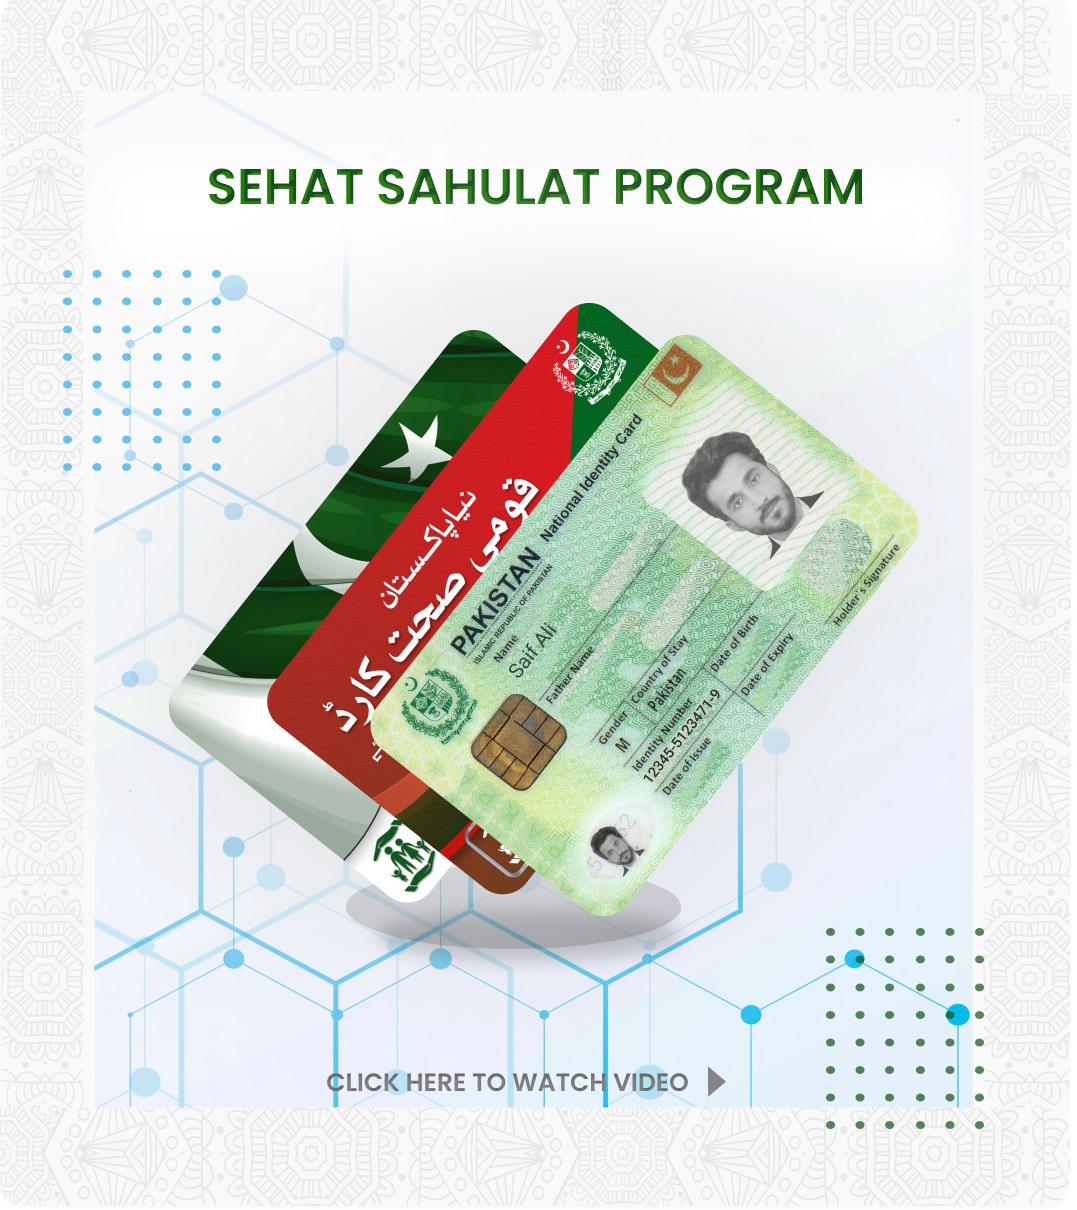  Sehat Card Image Sehat sahulat Program 